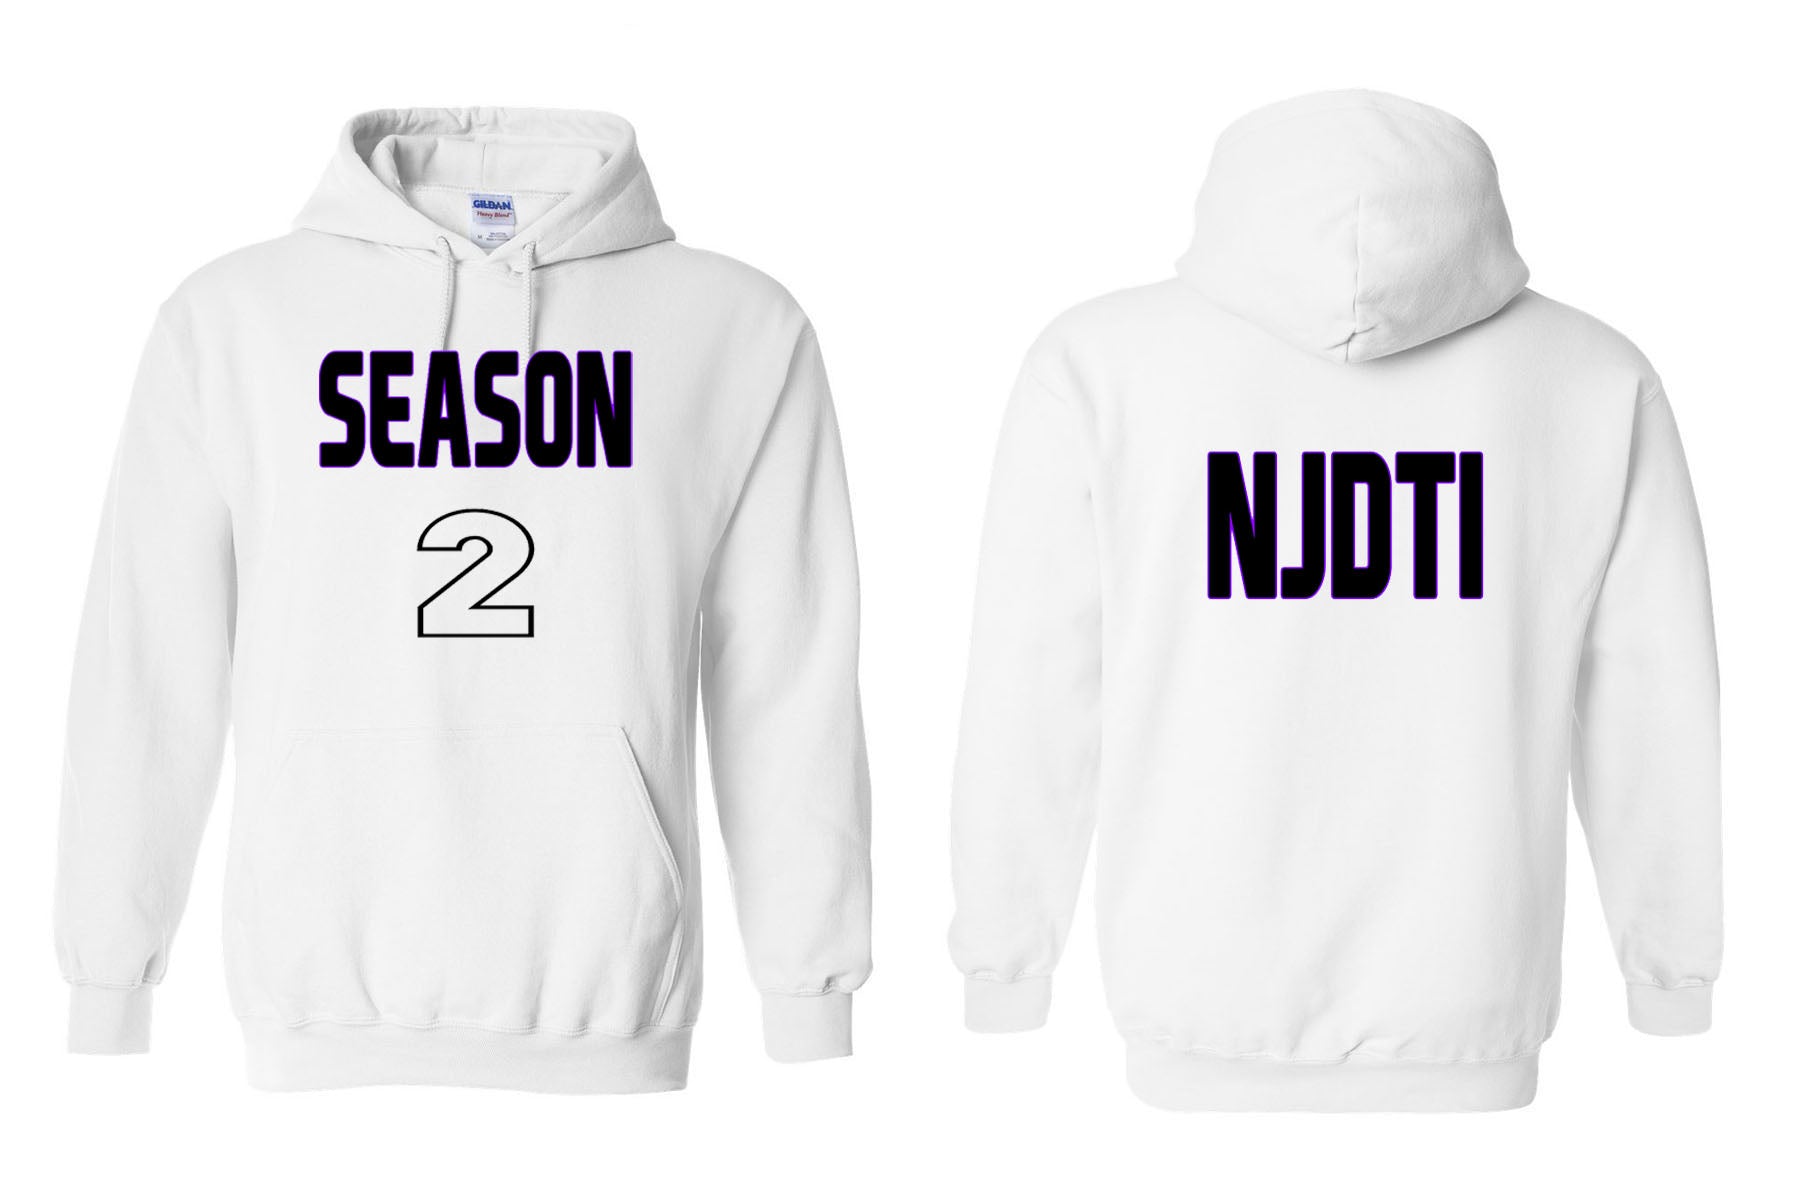 NJ Dance design 22-1 Zip up Sweatshirt